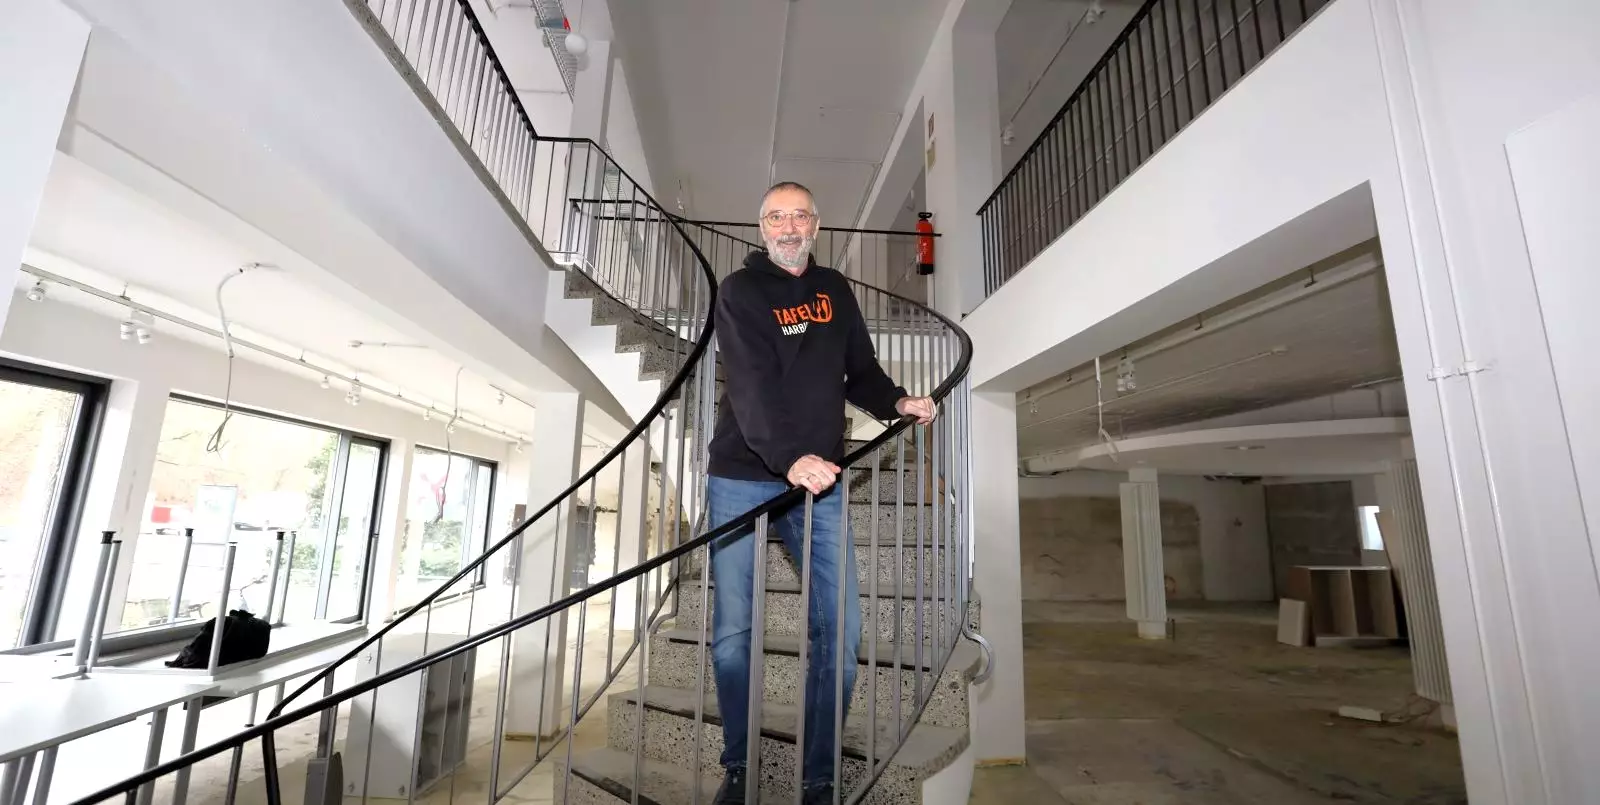 Viel Platz auf zwei Etagen: Vorstandsmitglied Ansbert Kneip in den neuen Räumen der Harburger Tafel. Foto: Christian Bittcher